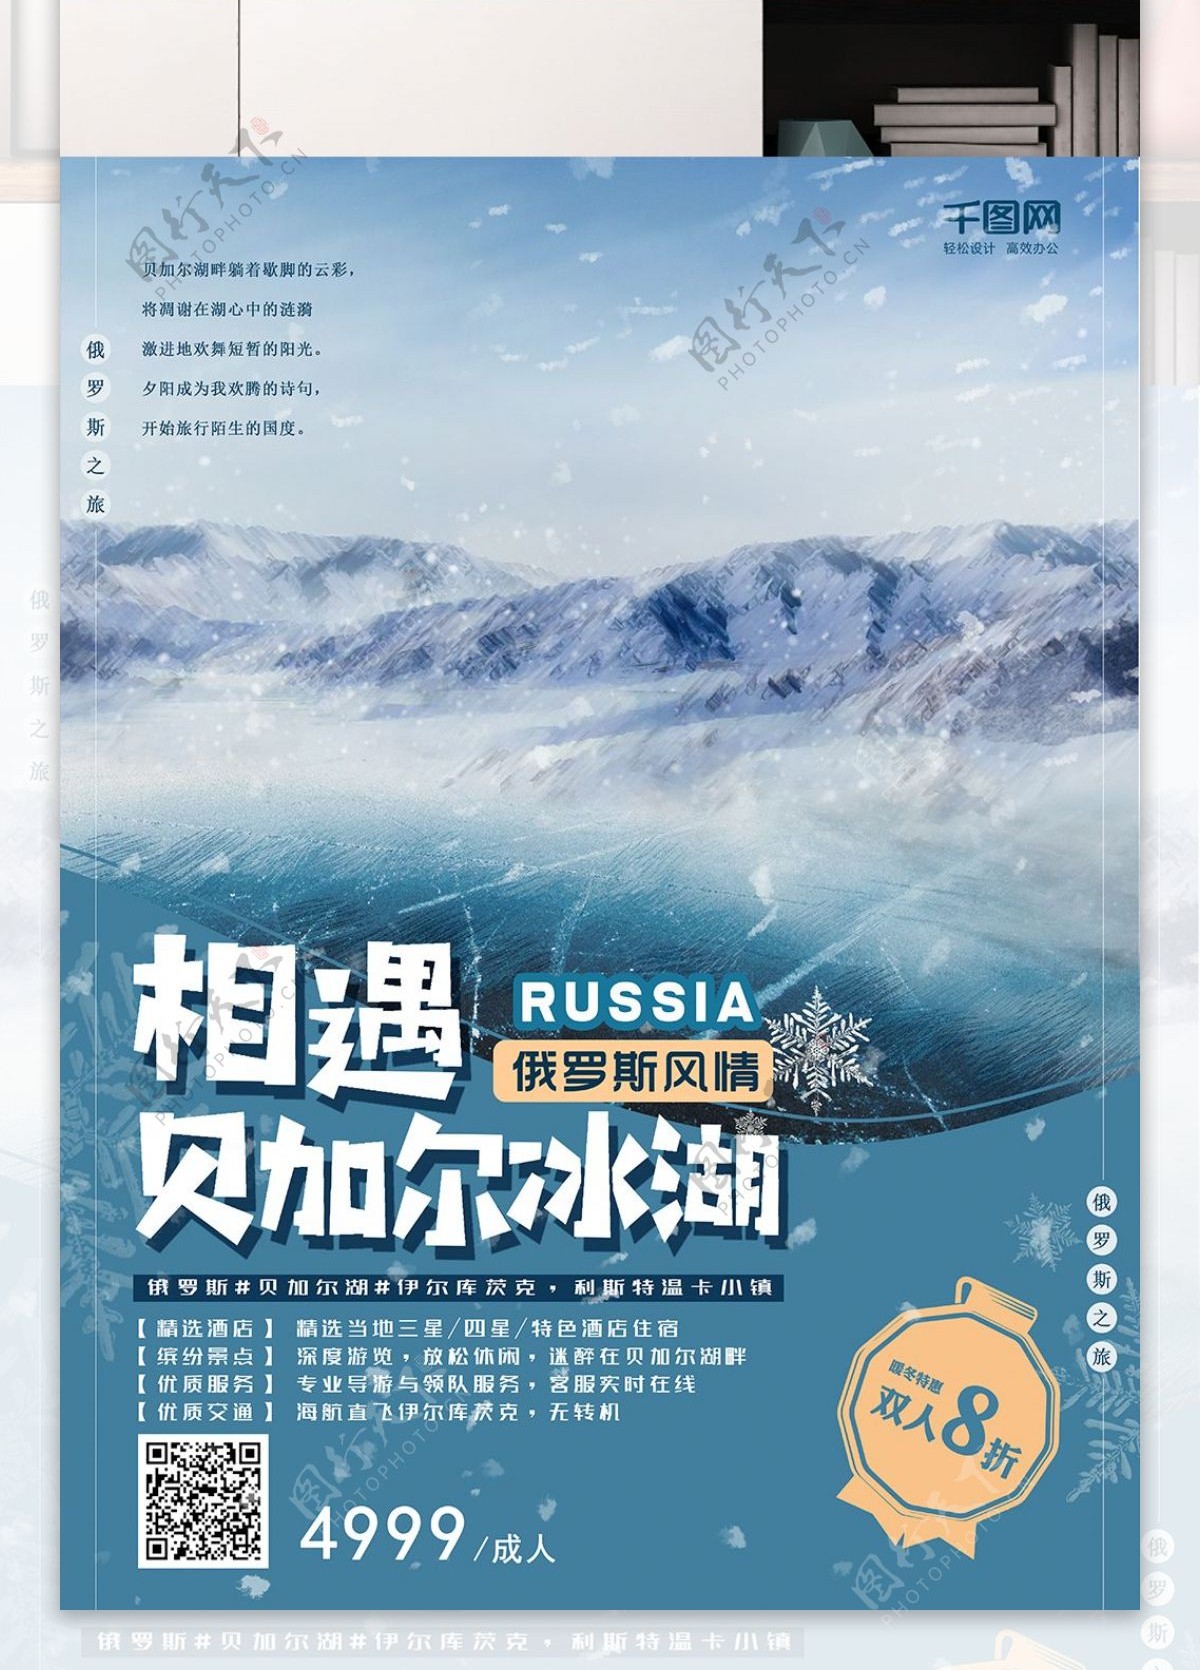 俄罗斯旅游海报贝加尔湖冬季雪景蓝色